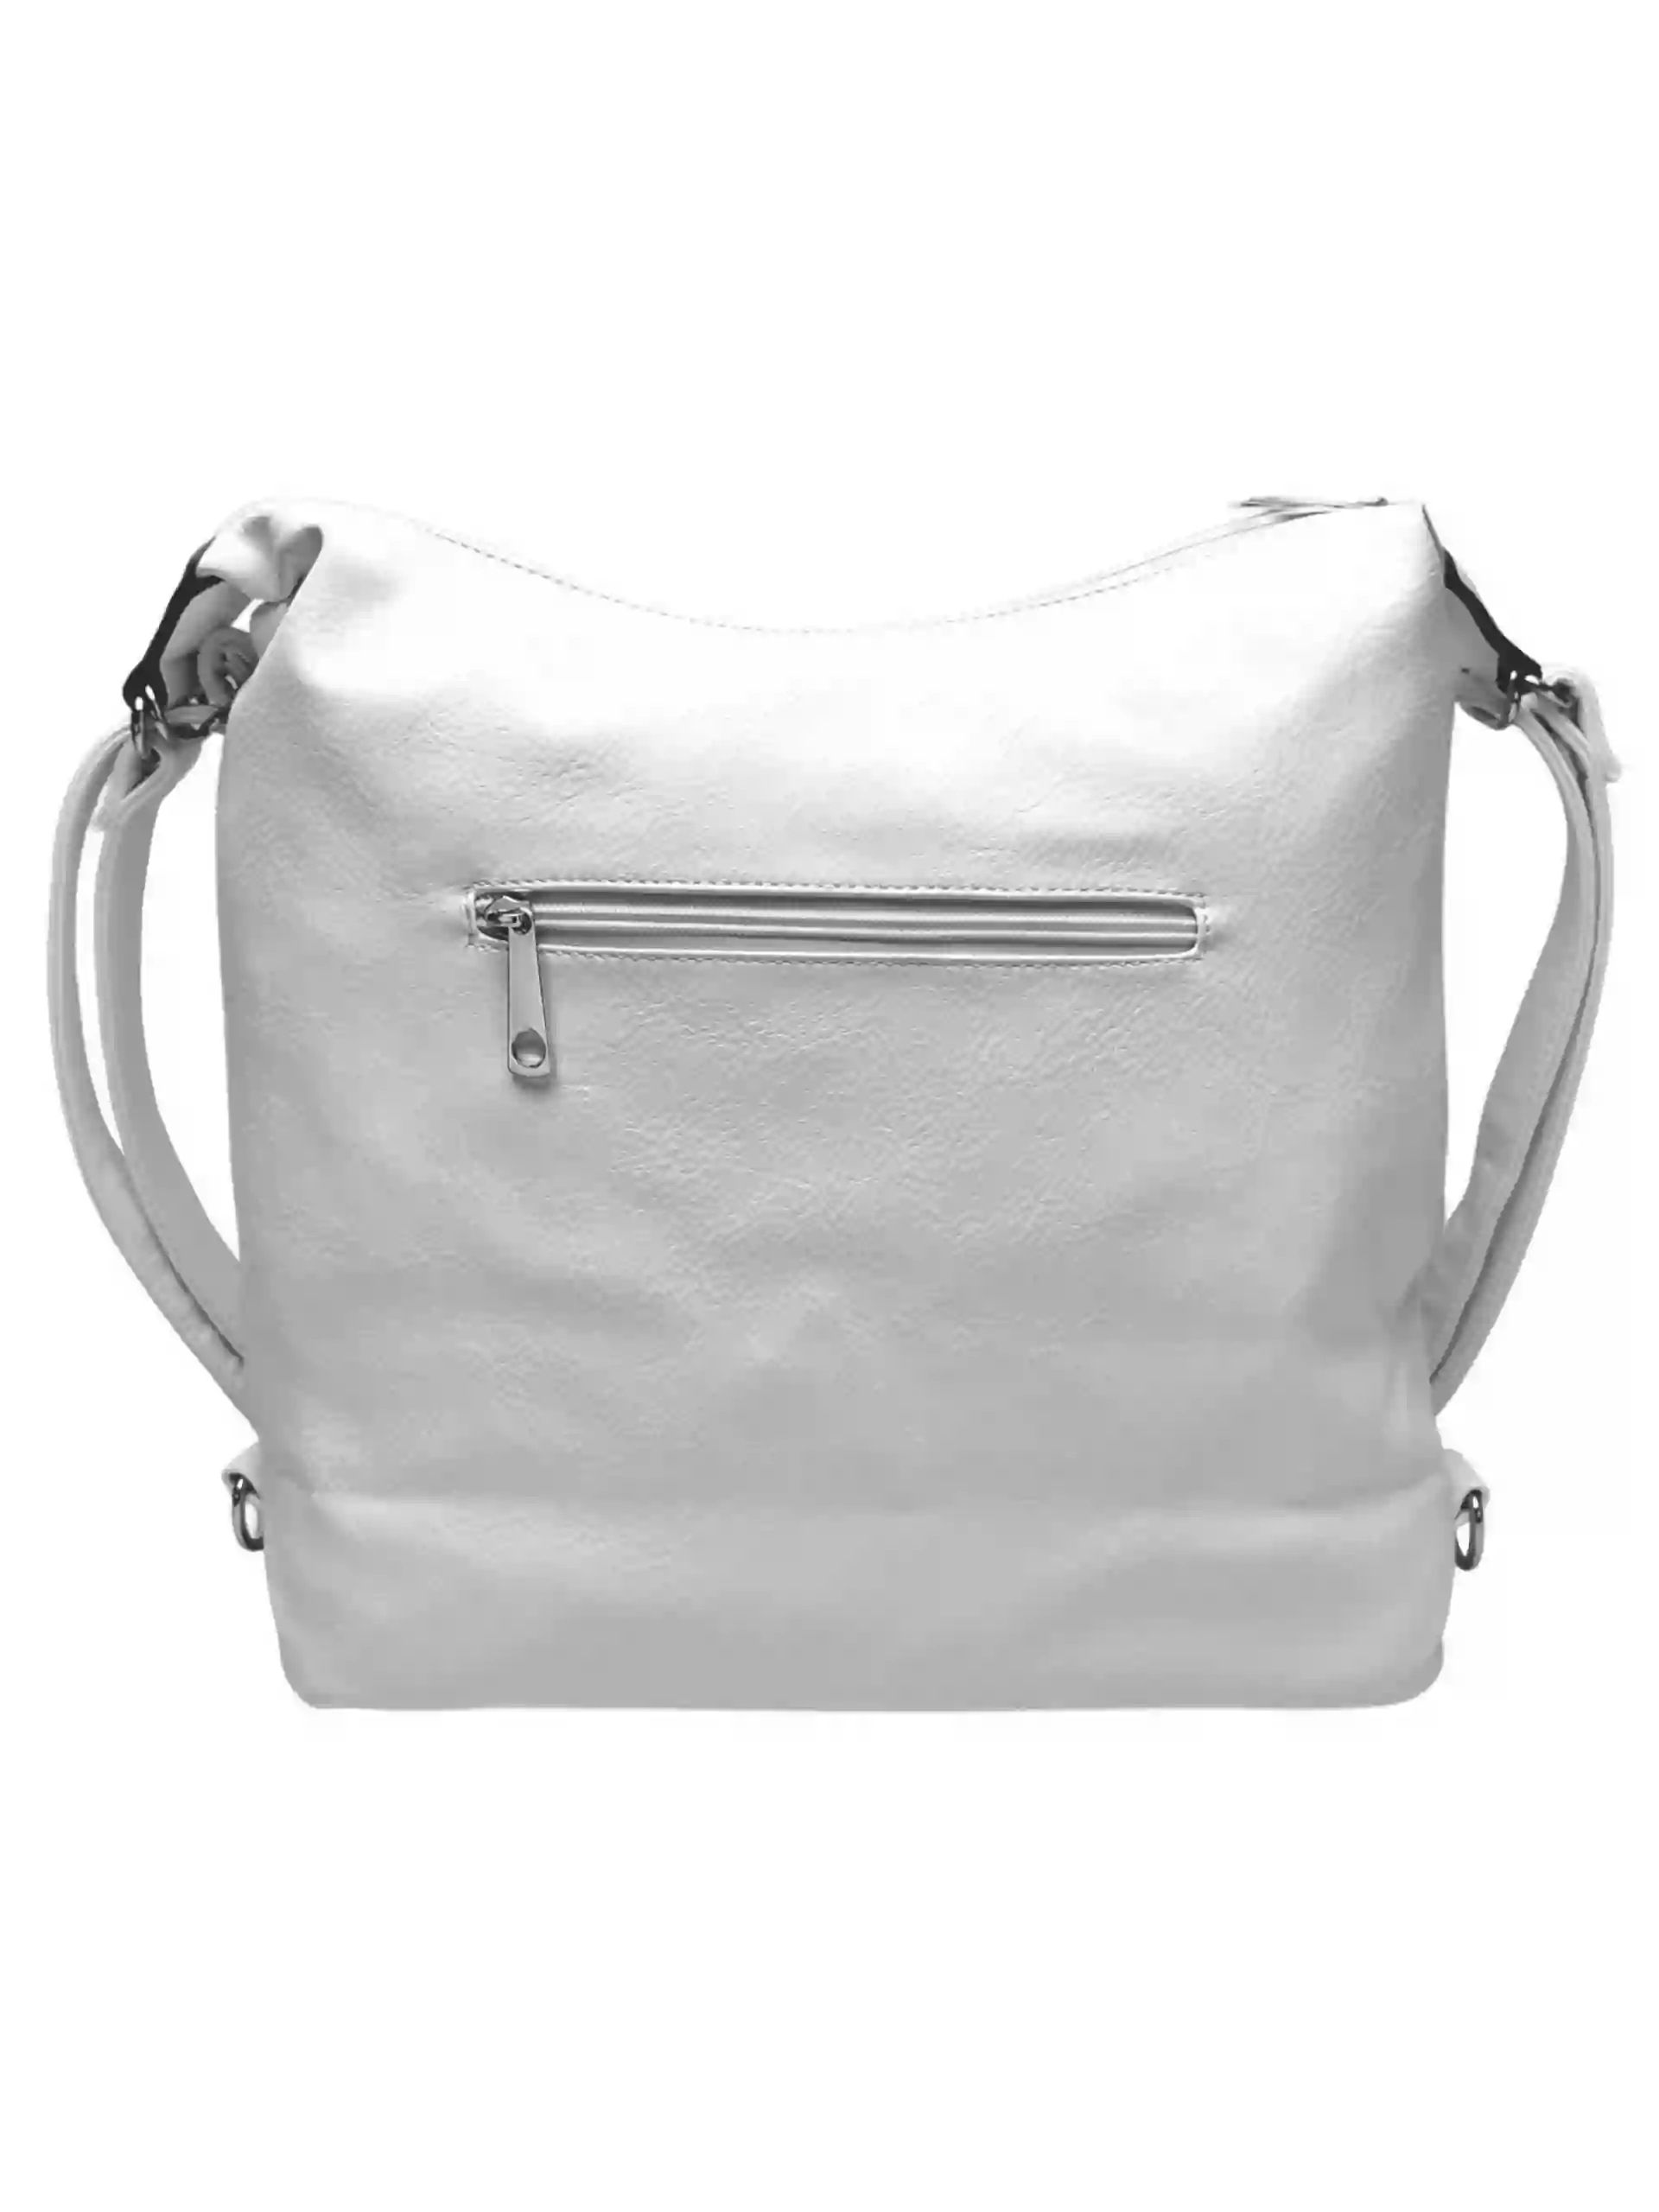 Velký bílý kabelko-batoh z eko kůže, Tapple, H18077, zadní strana kabelko-batohu 2v1